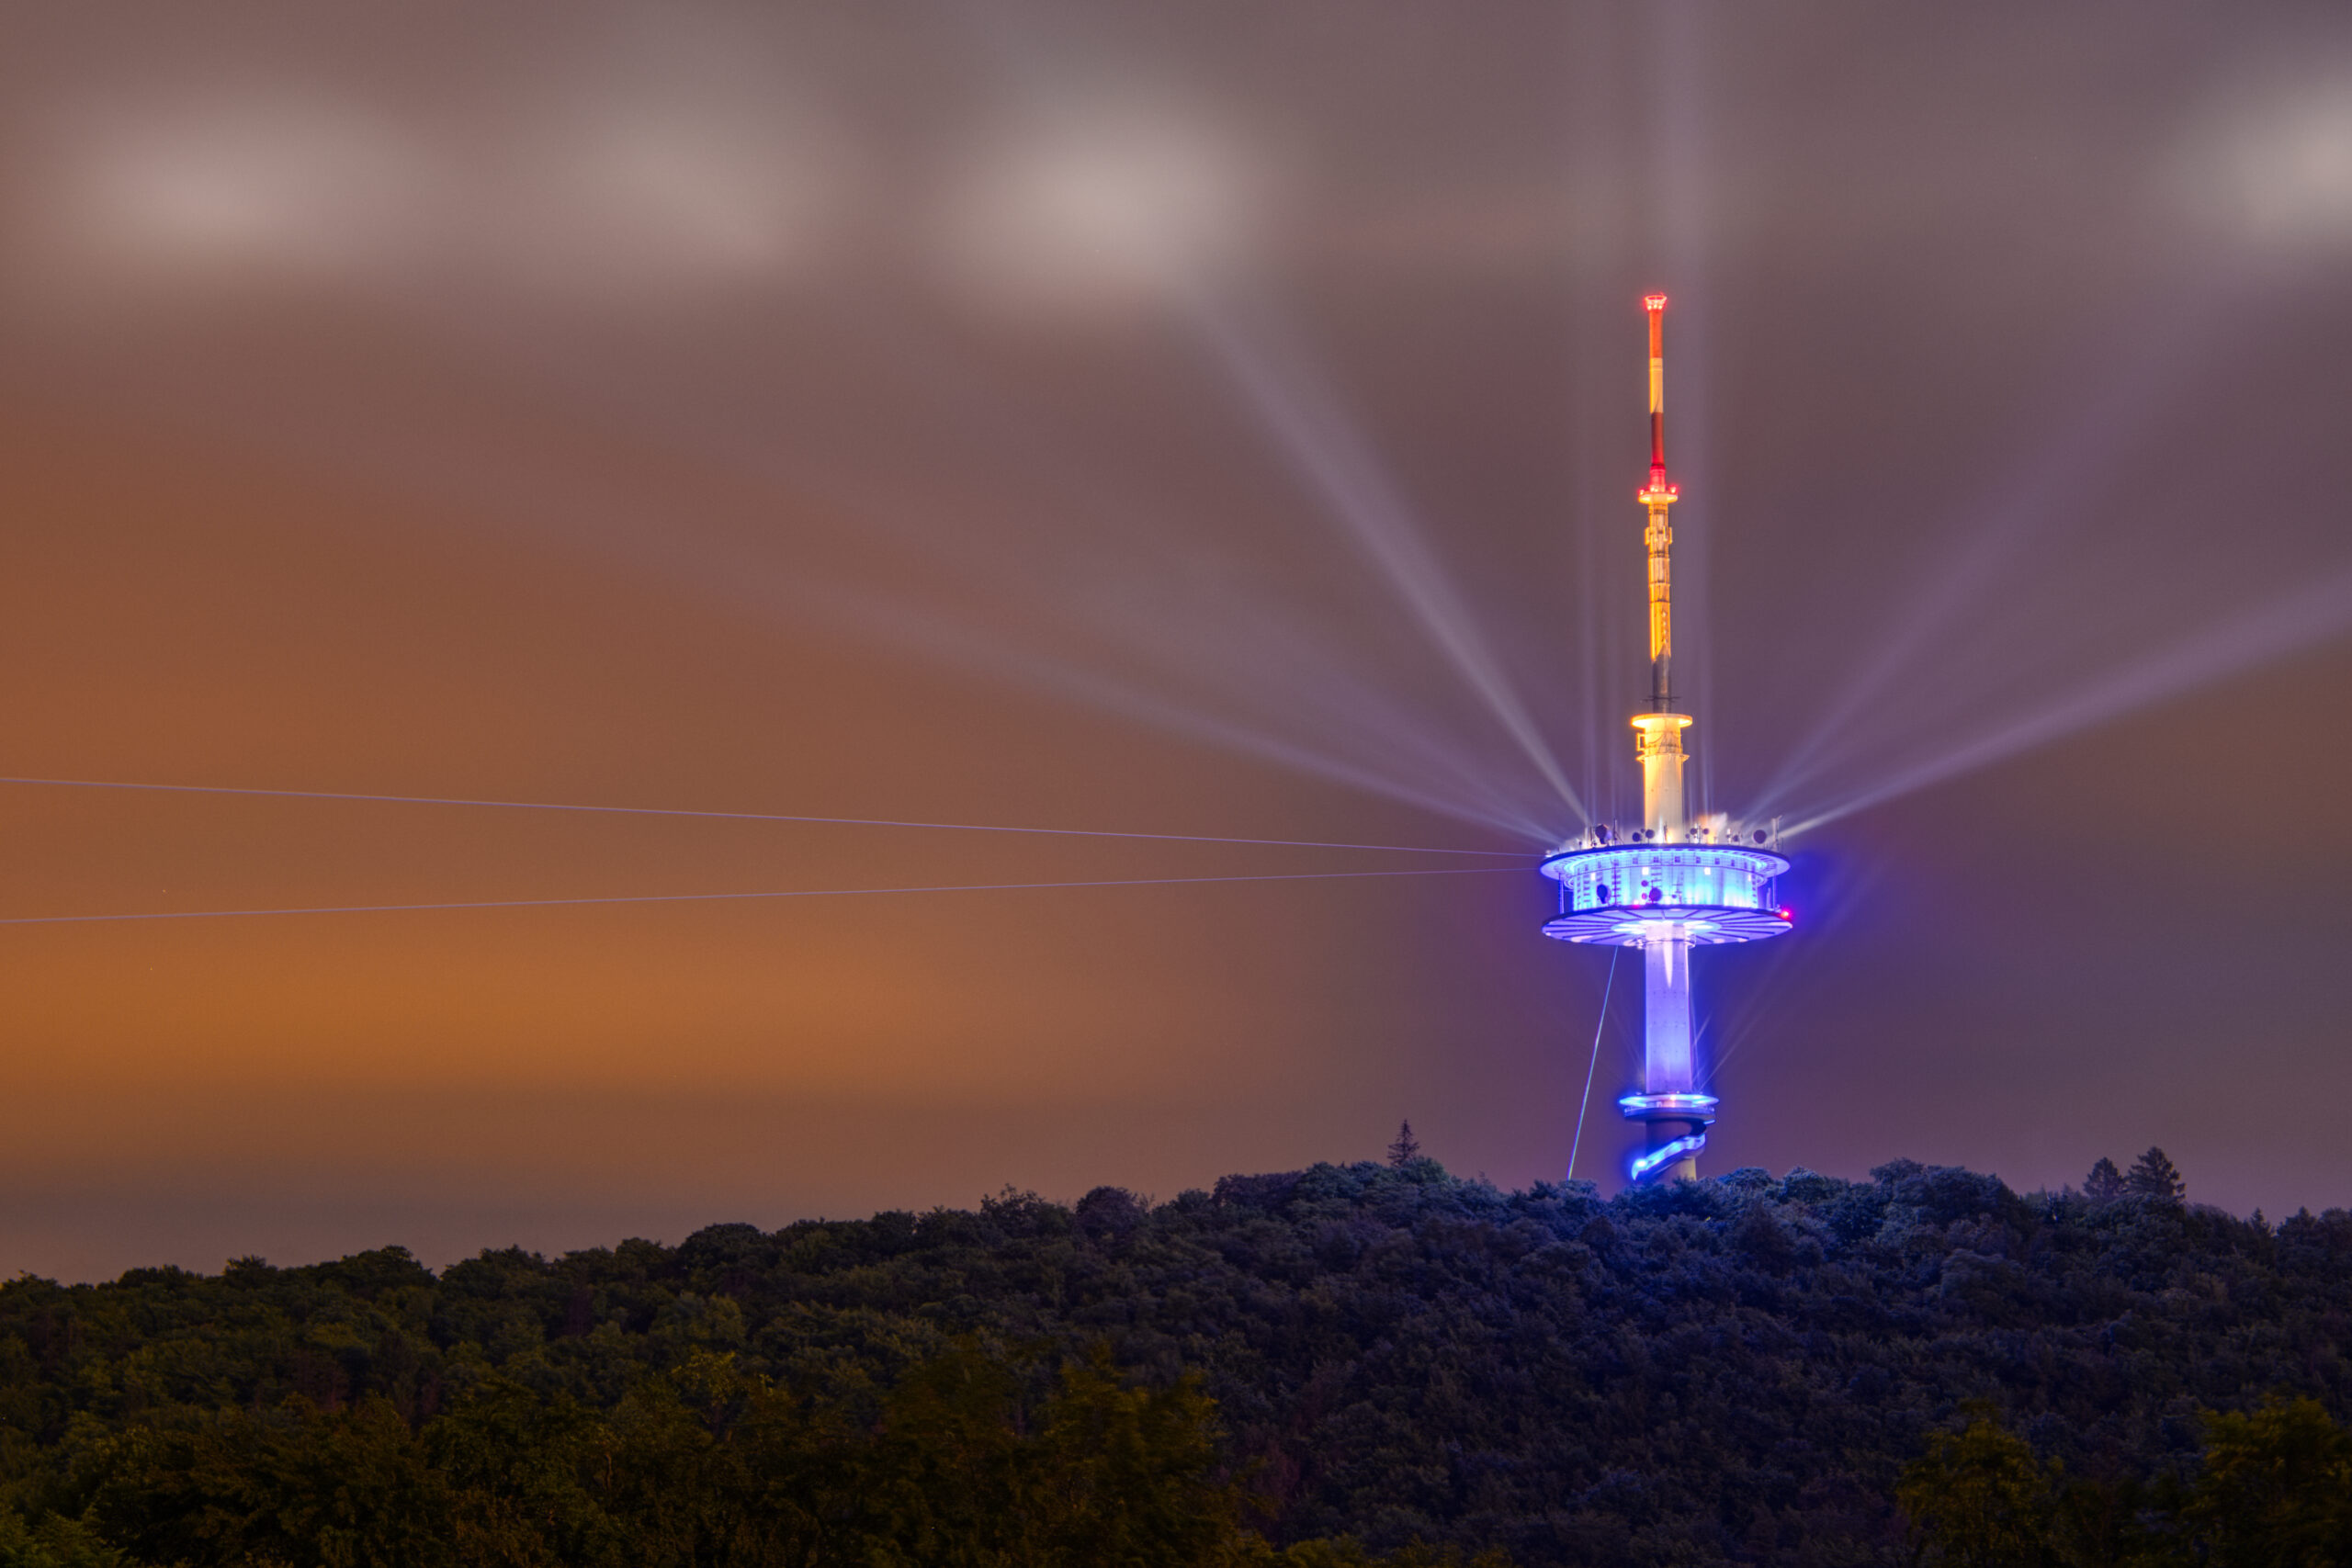 Der Fernsehturm Porta Westfalica wird zum Leuchtsignal für #kulturerhalten. In bunten Farben erstrahlt der Fernmeldeturm auf dem Jakobsberg und wirft sein Licht auf Kultureinrichtungen im Mühlenkreis.